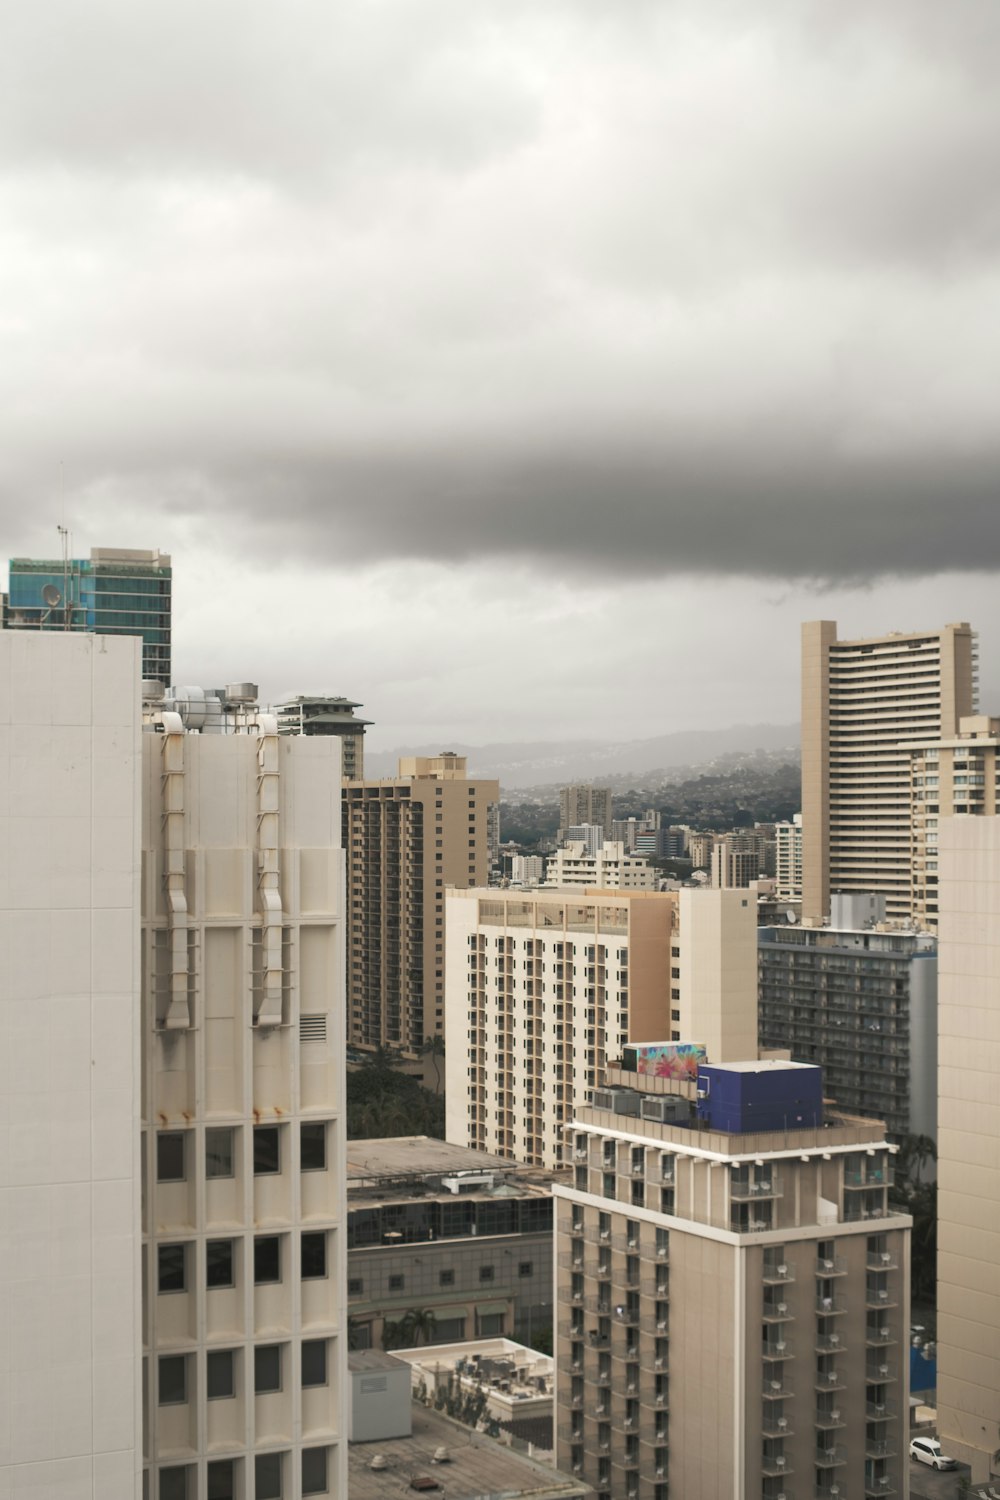 Una vista de una ciudad desde un edificio alto